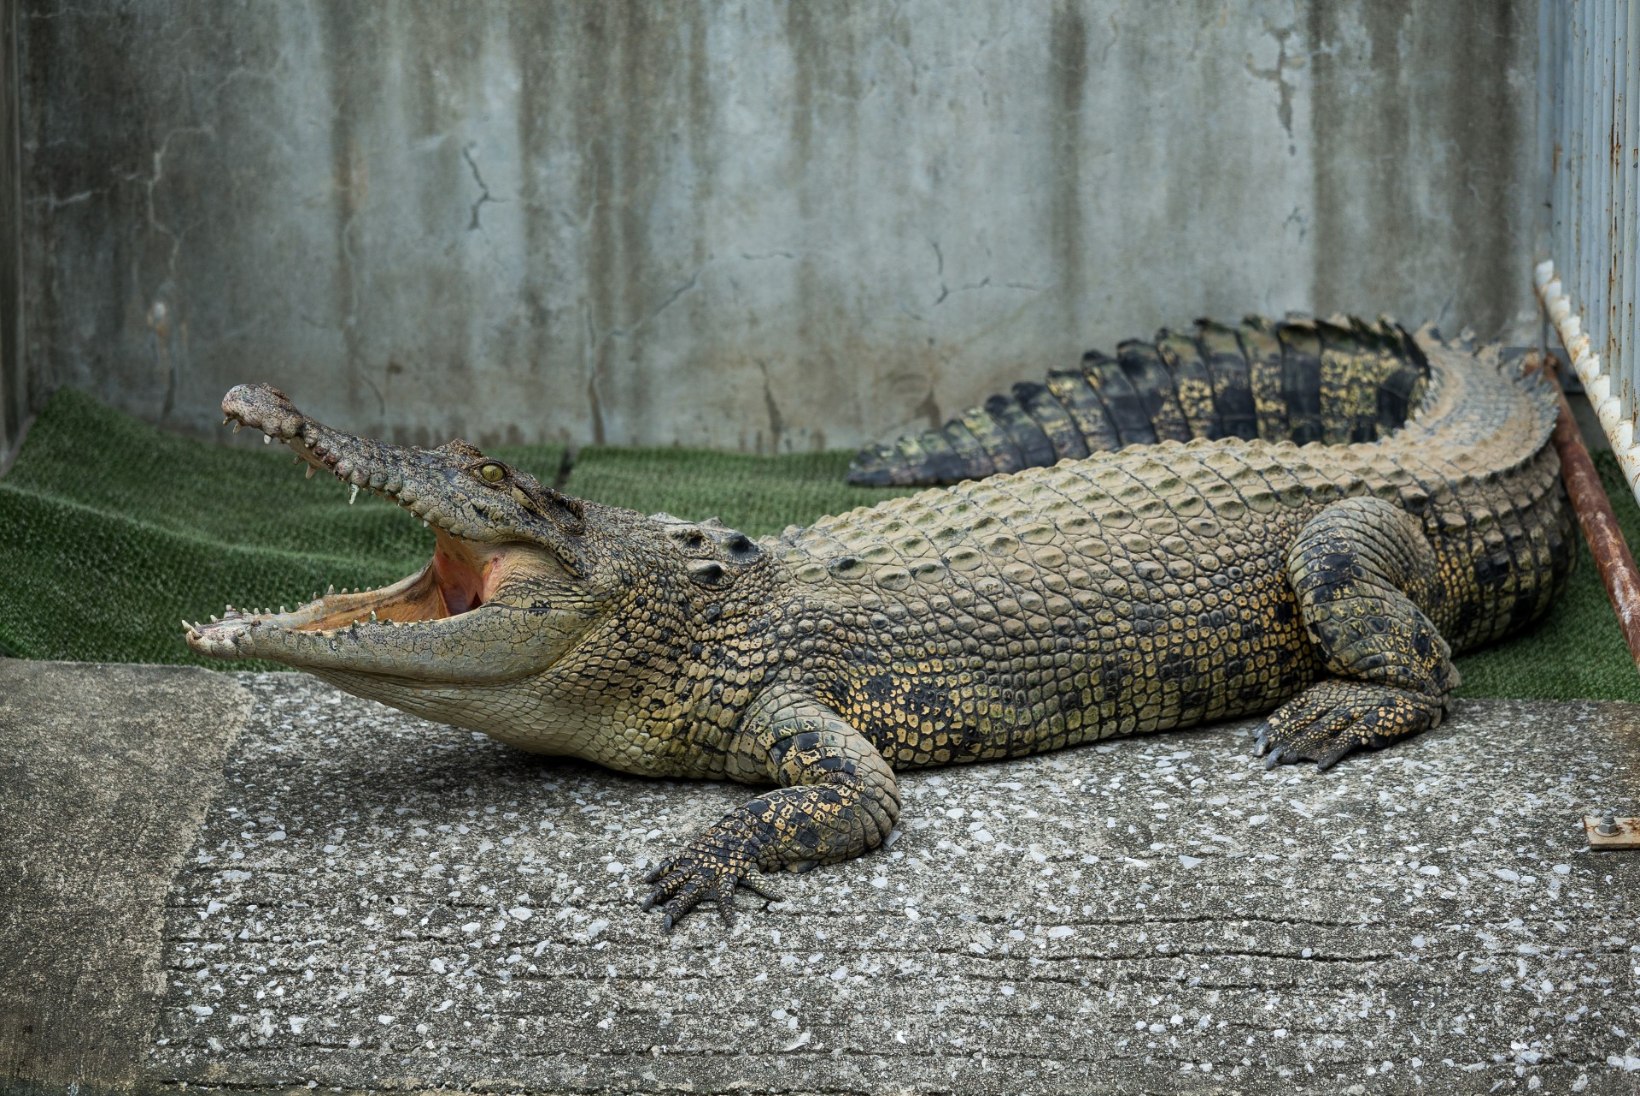 Enda sõnul krokodille kontrolliv mees jäi Indoneesias krokodilli lõugade vahele